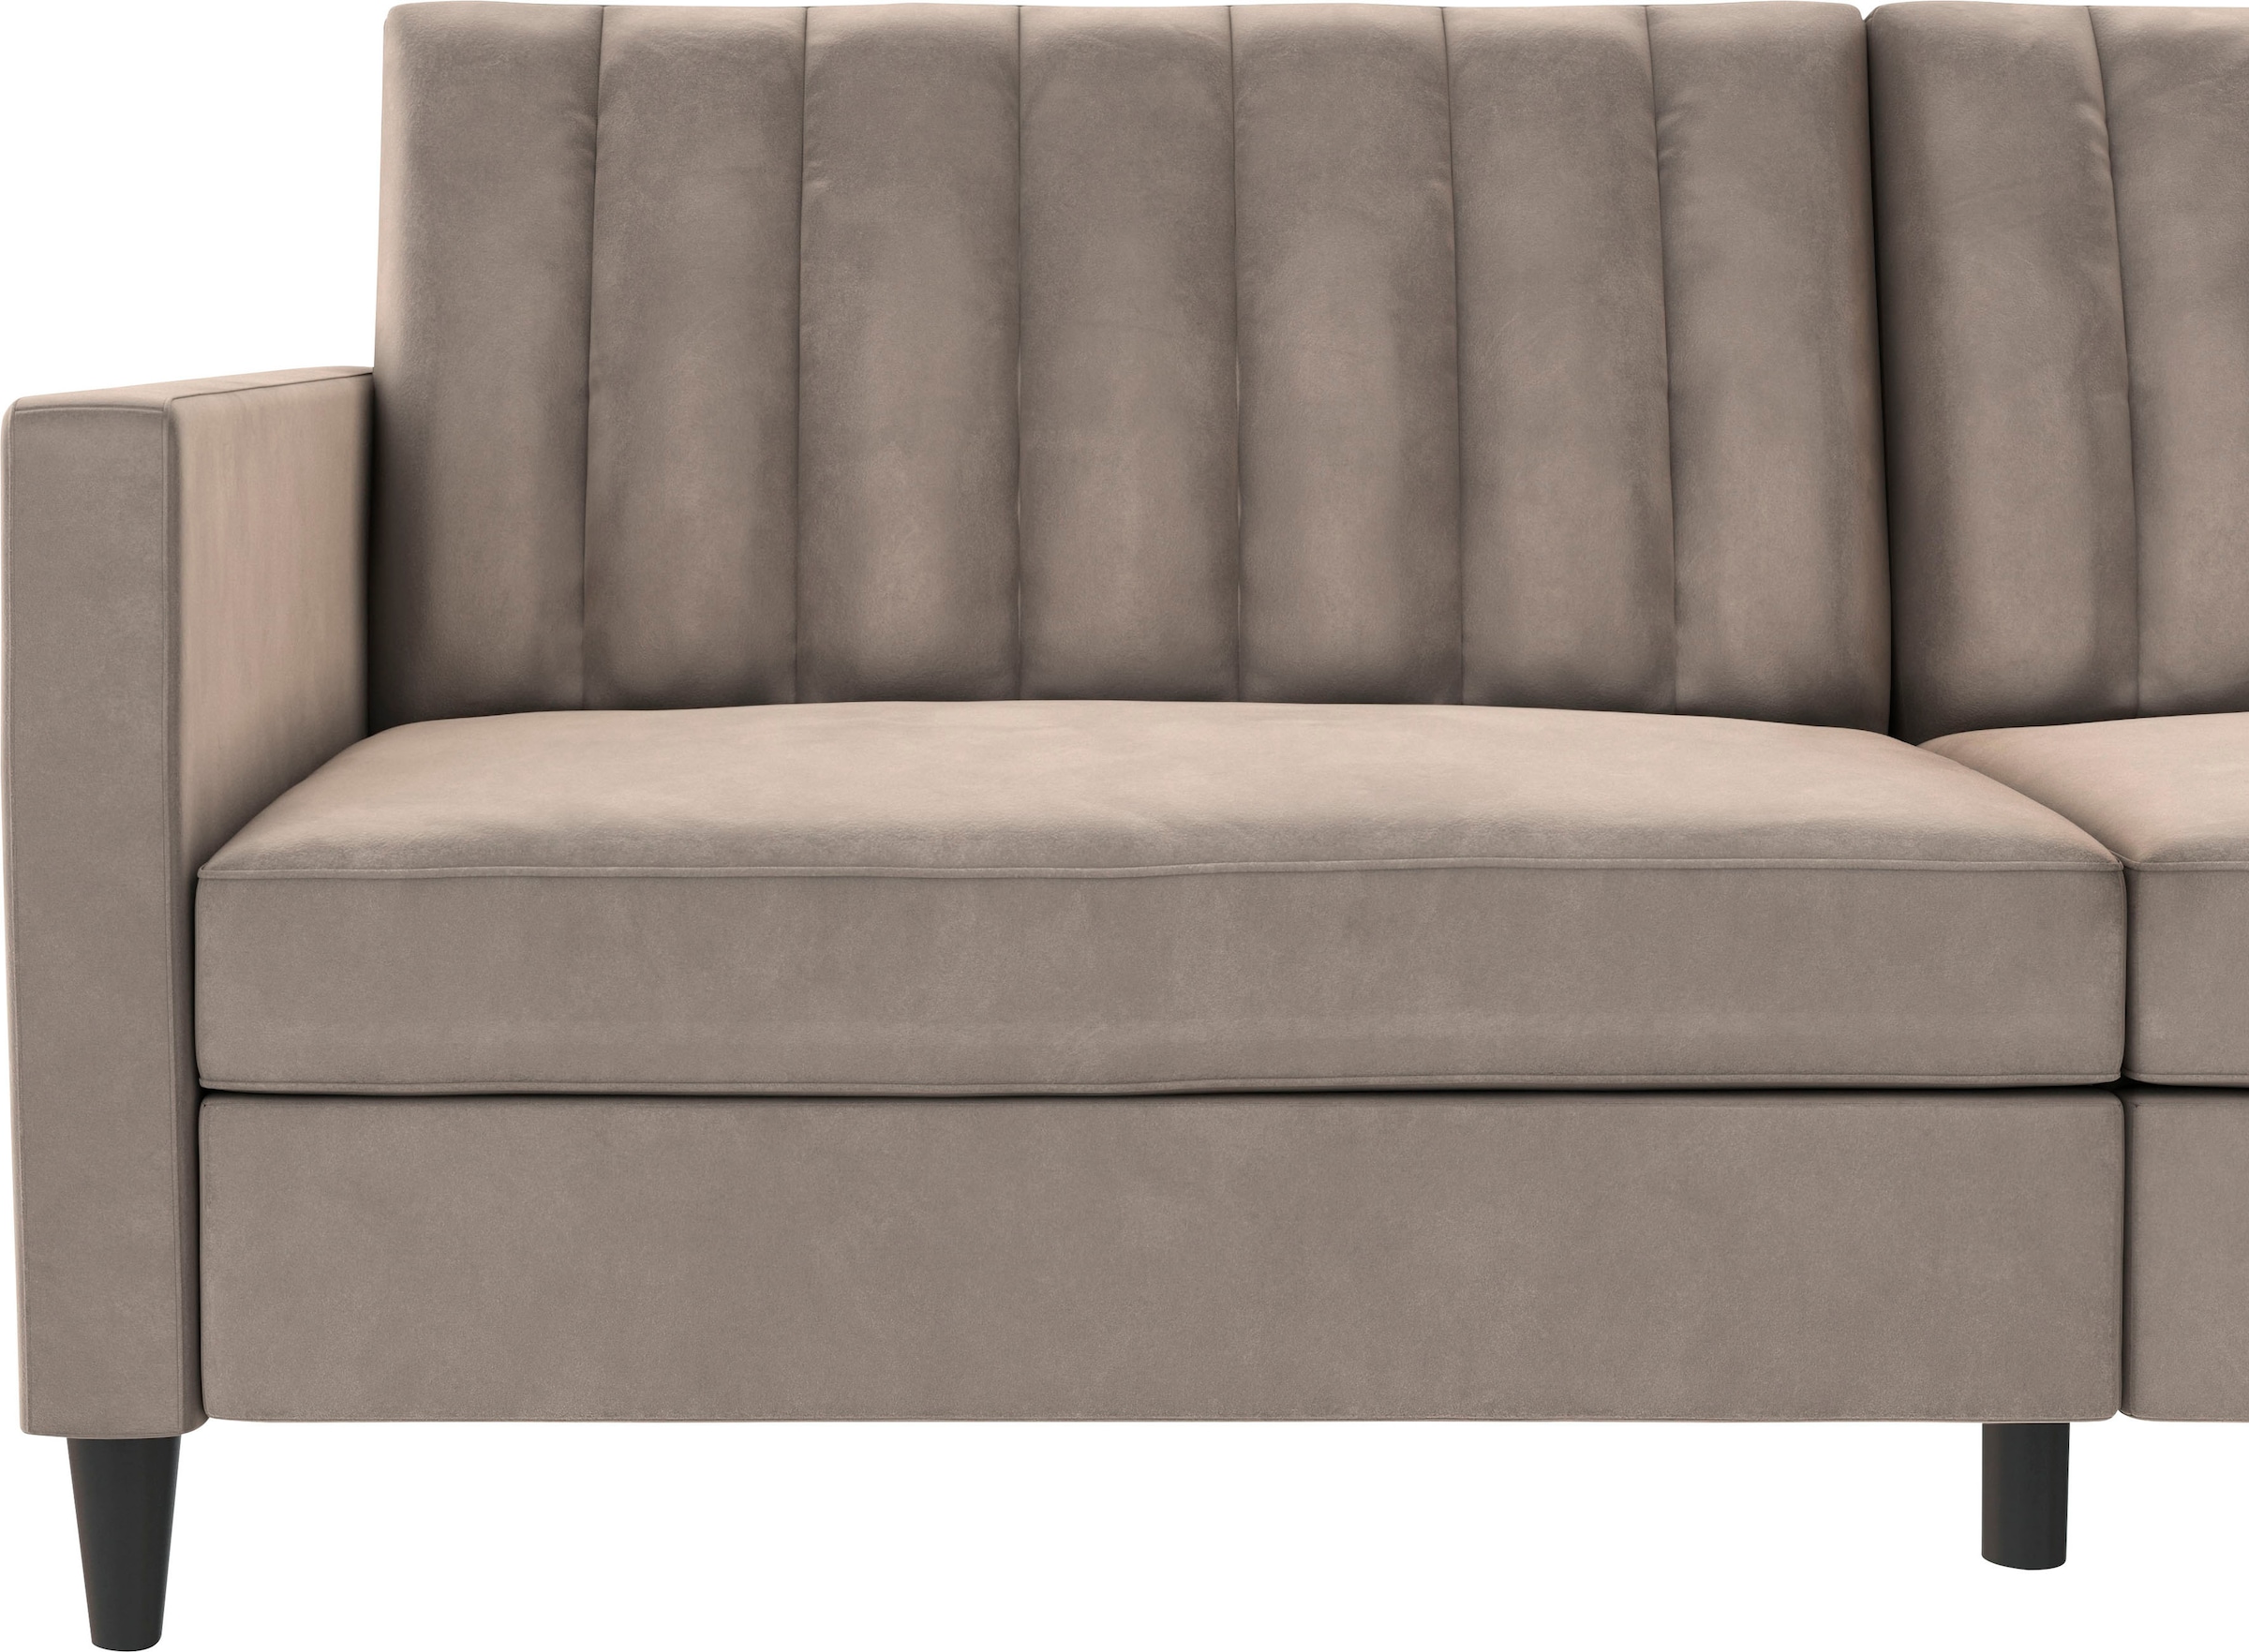 Dorel Home 3-Sitzer »Celine«, Rückenlehne 2-teilig und 3-fach verstellbar, Sitzhöhe 43 cm